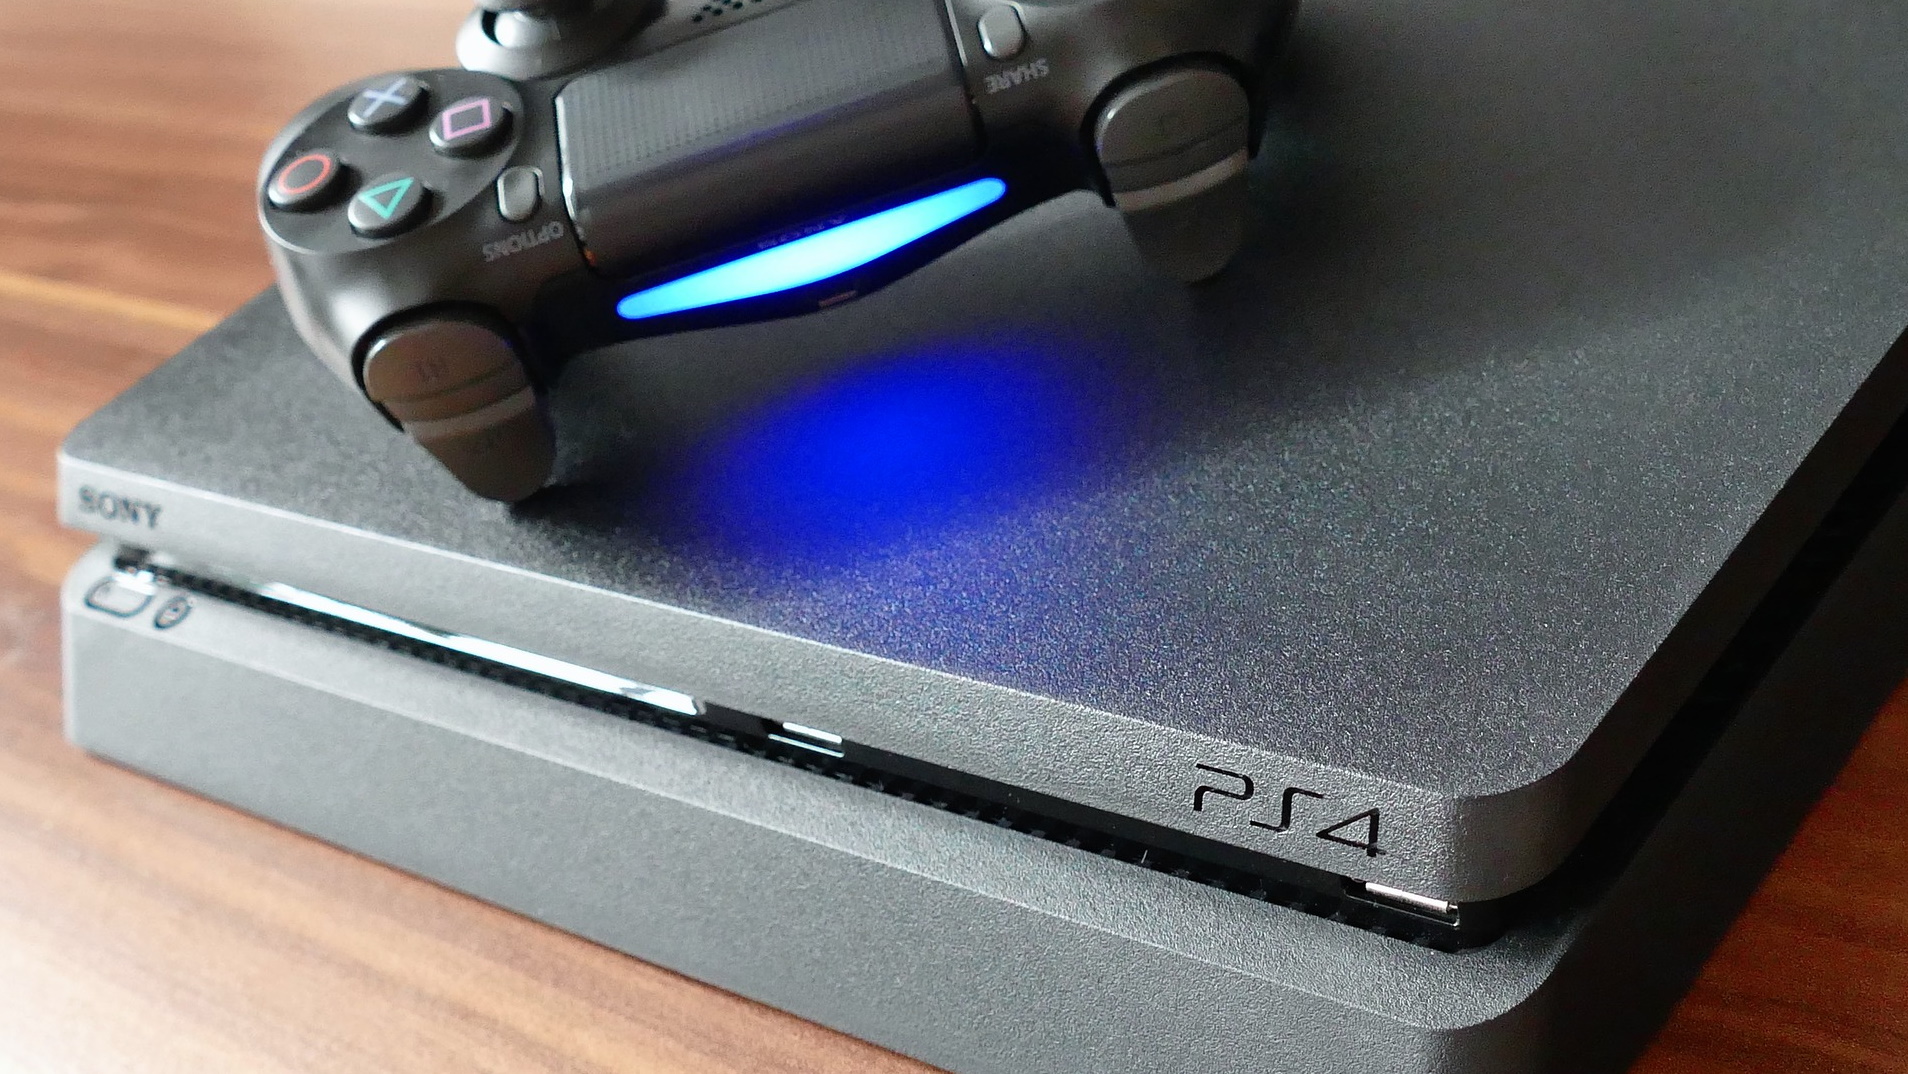 PlayStation 4 ou Xbox One, qual vale mais a pena?